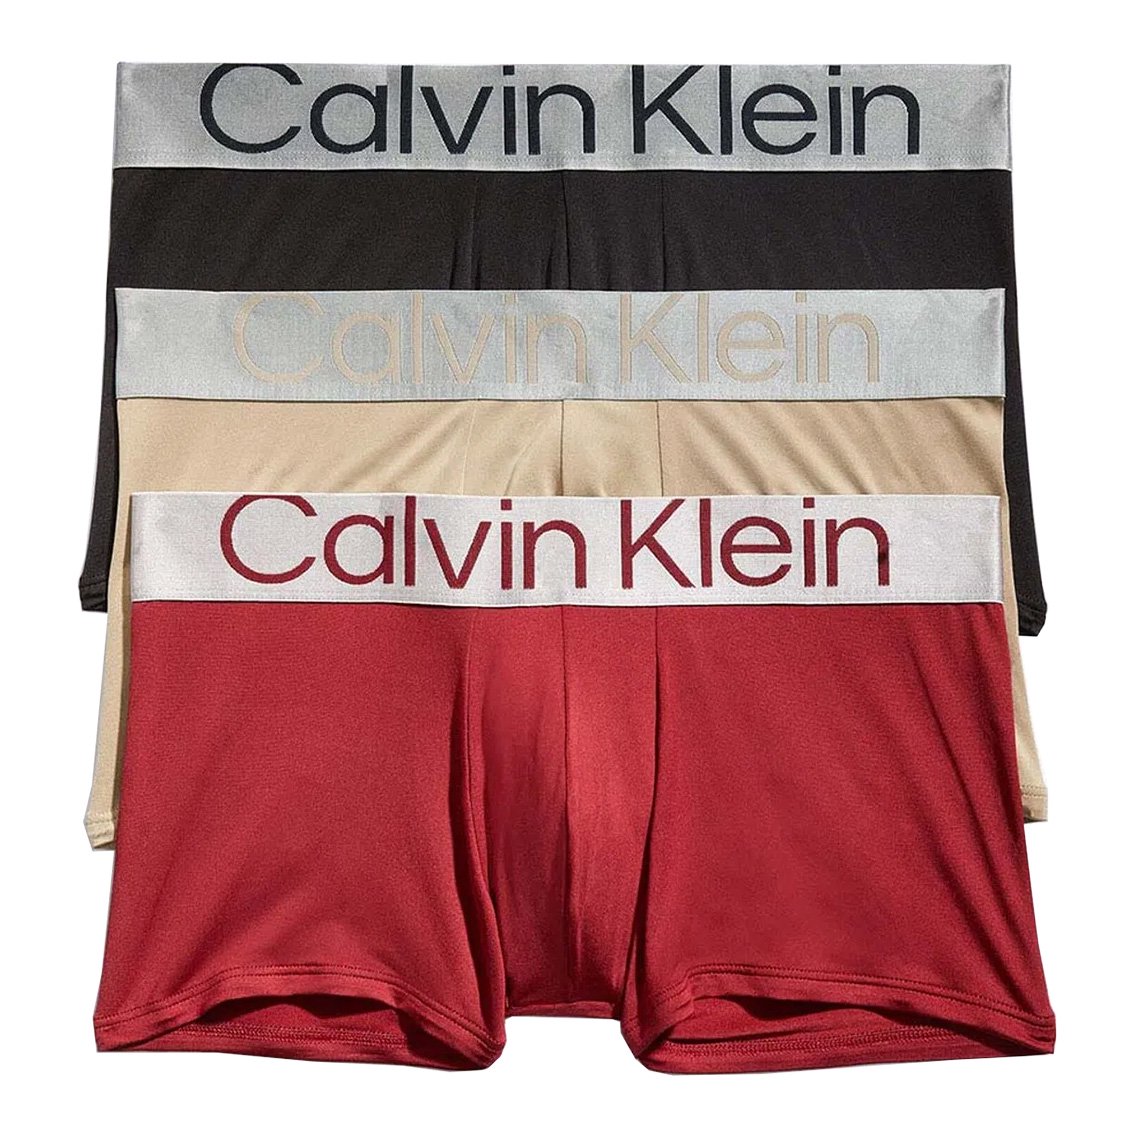 Calvin Klein(カルバンクライン)[NB3074-911]:ボクサーパンツ,男性下着,インナーの通販